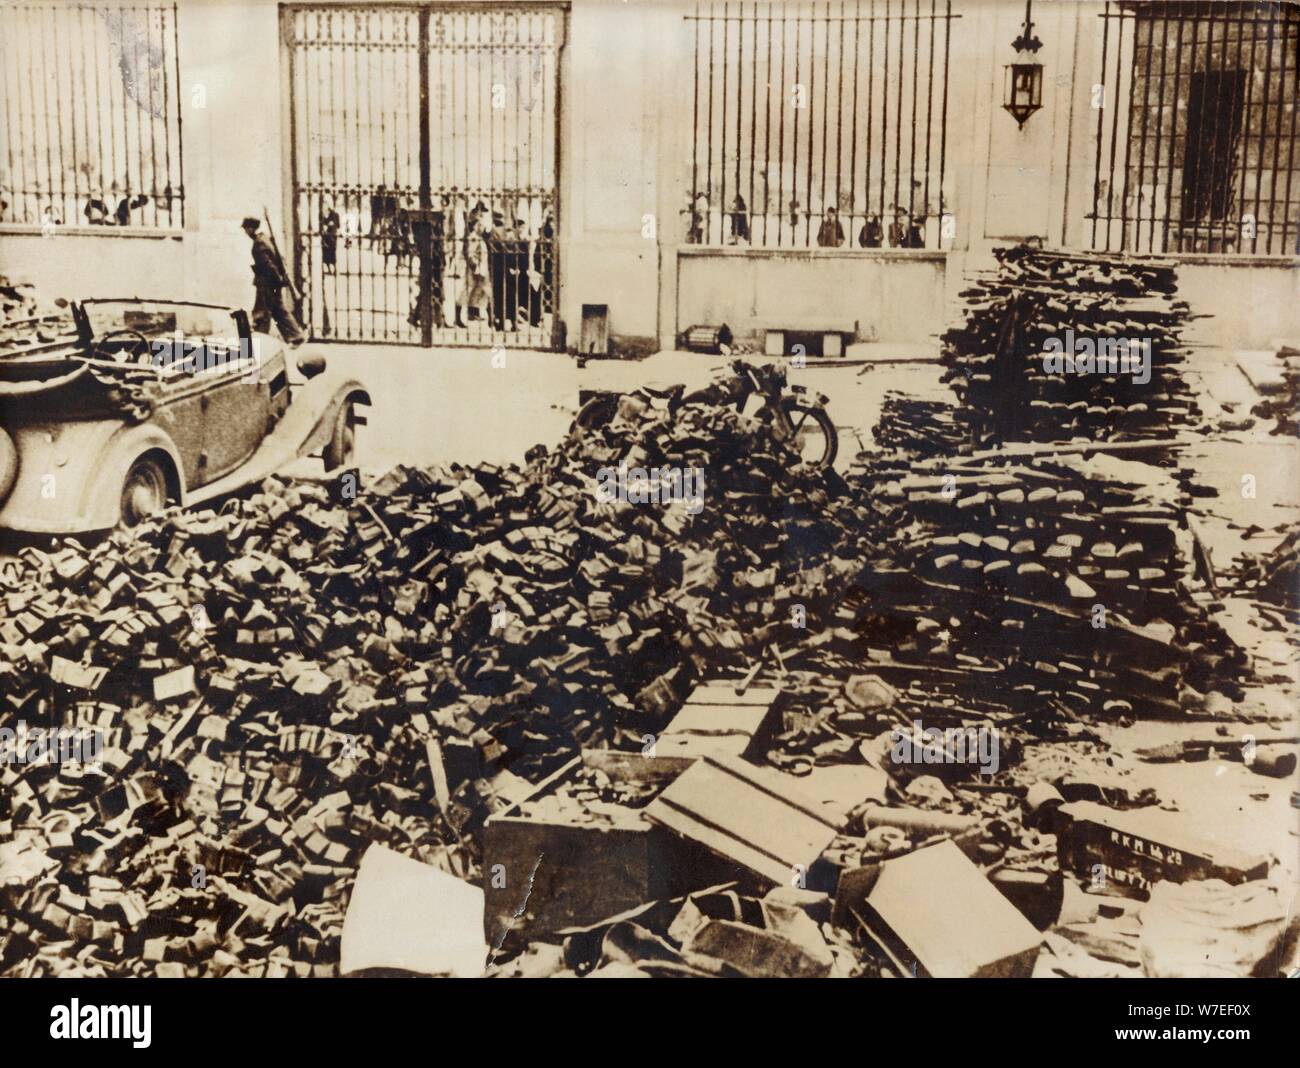 Polish armes prises par les Allemands, Palais de Varsovie, Pologne, la seconde guerre mondiale, 1944. Artiste : Inconnu Banque D'Images